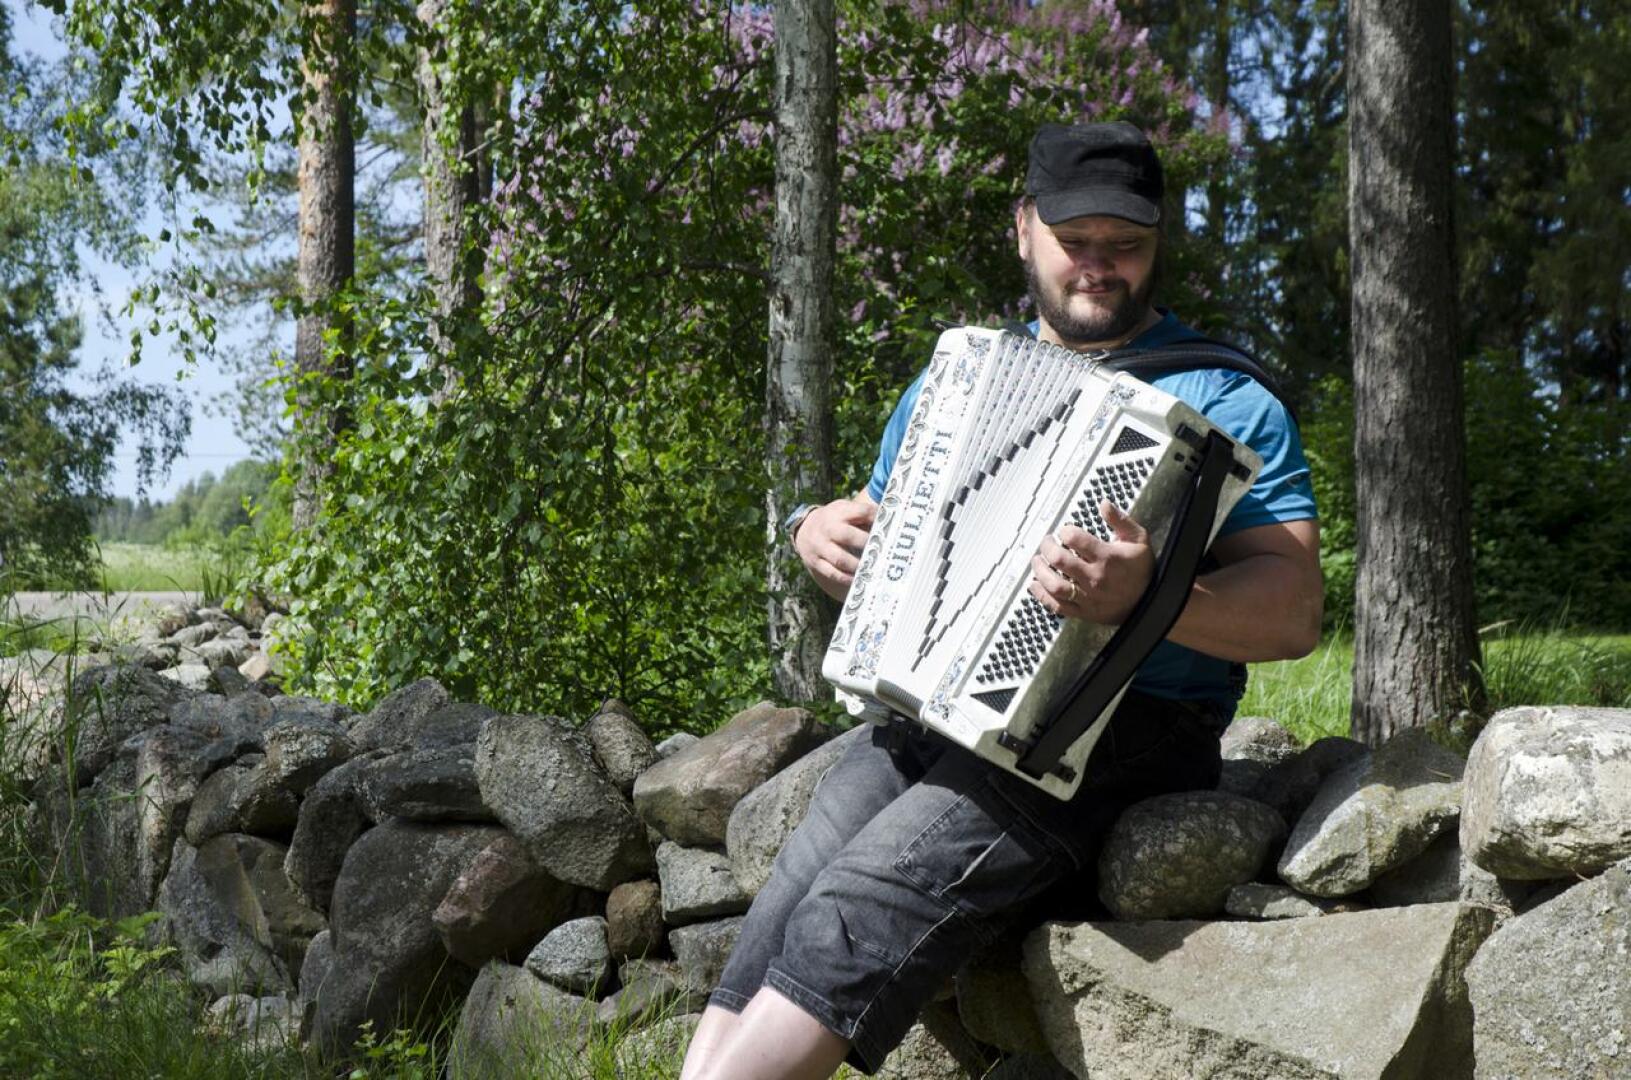 Haitarinsoitto on Antti Takkusen intohimo. Hän soittaa Mansikkakangas oy -bändissä.